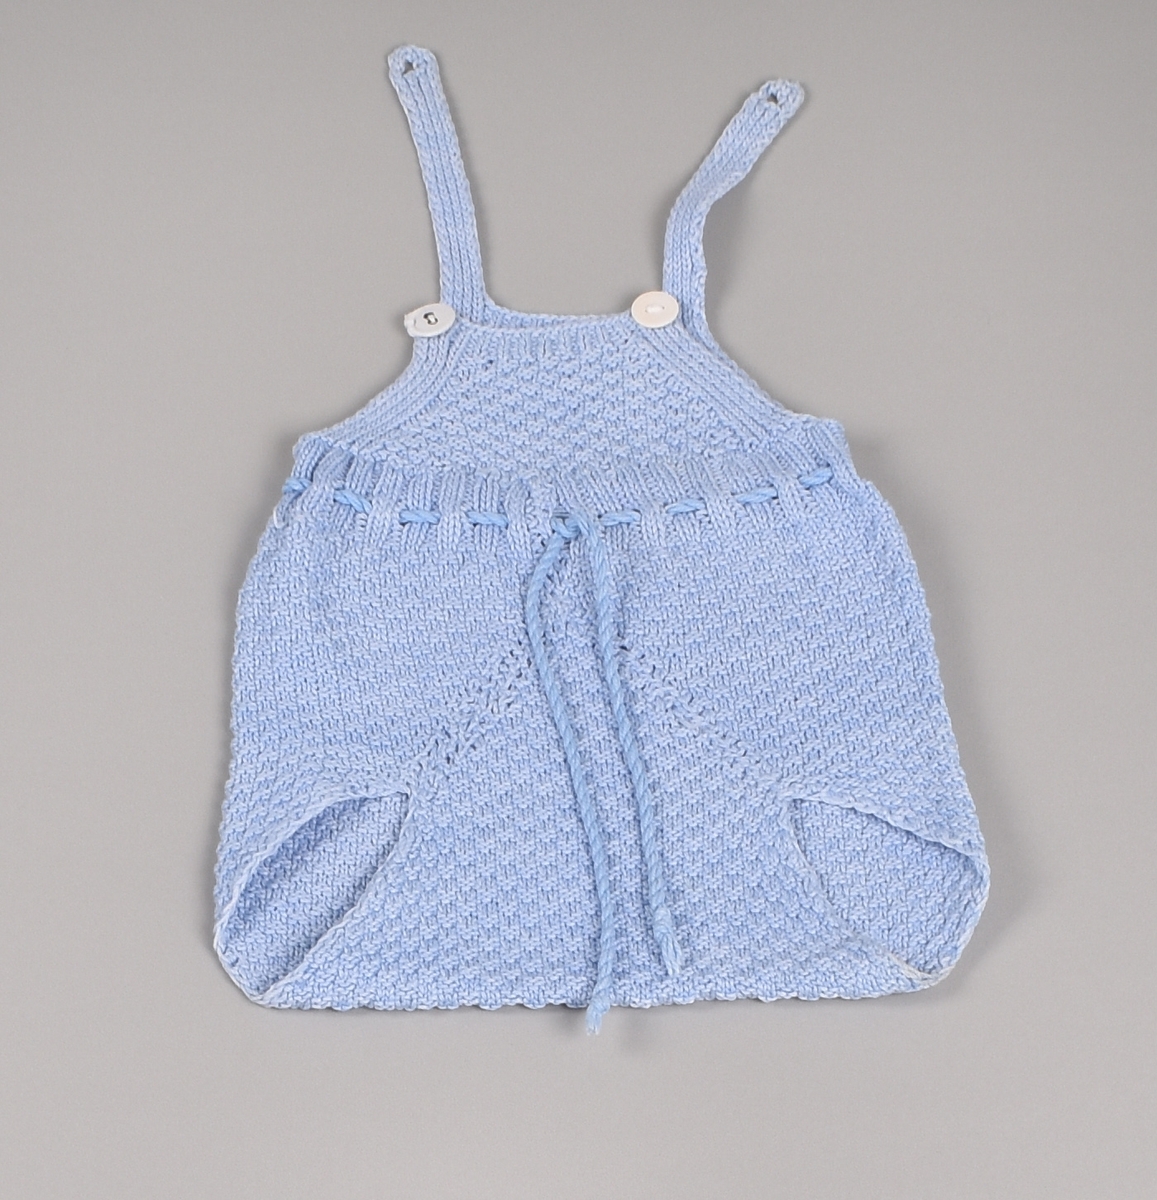 Lys blå strikket spedbarnsbukse med bærestykke og seler. Buksa er uten bein, har tvunnet snor i livet og selene festes foran med to knapper.